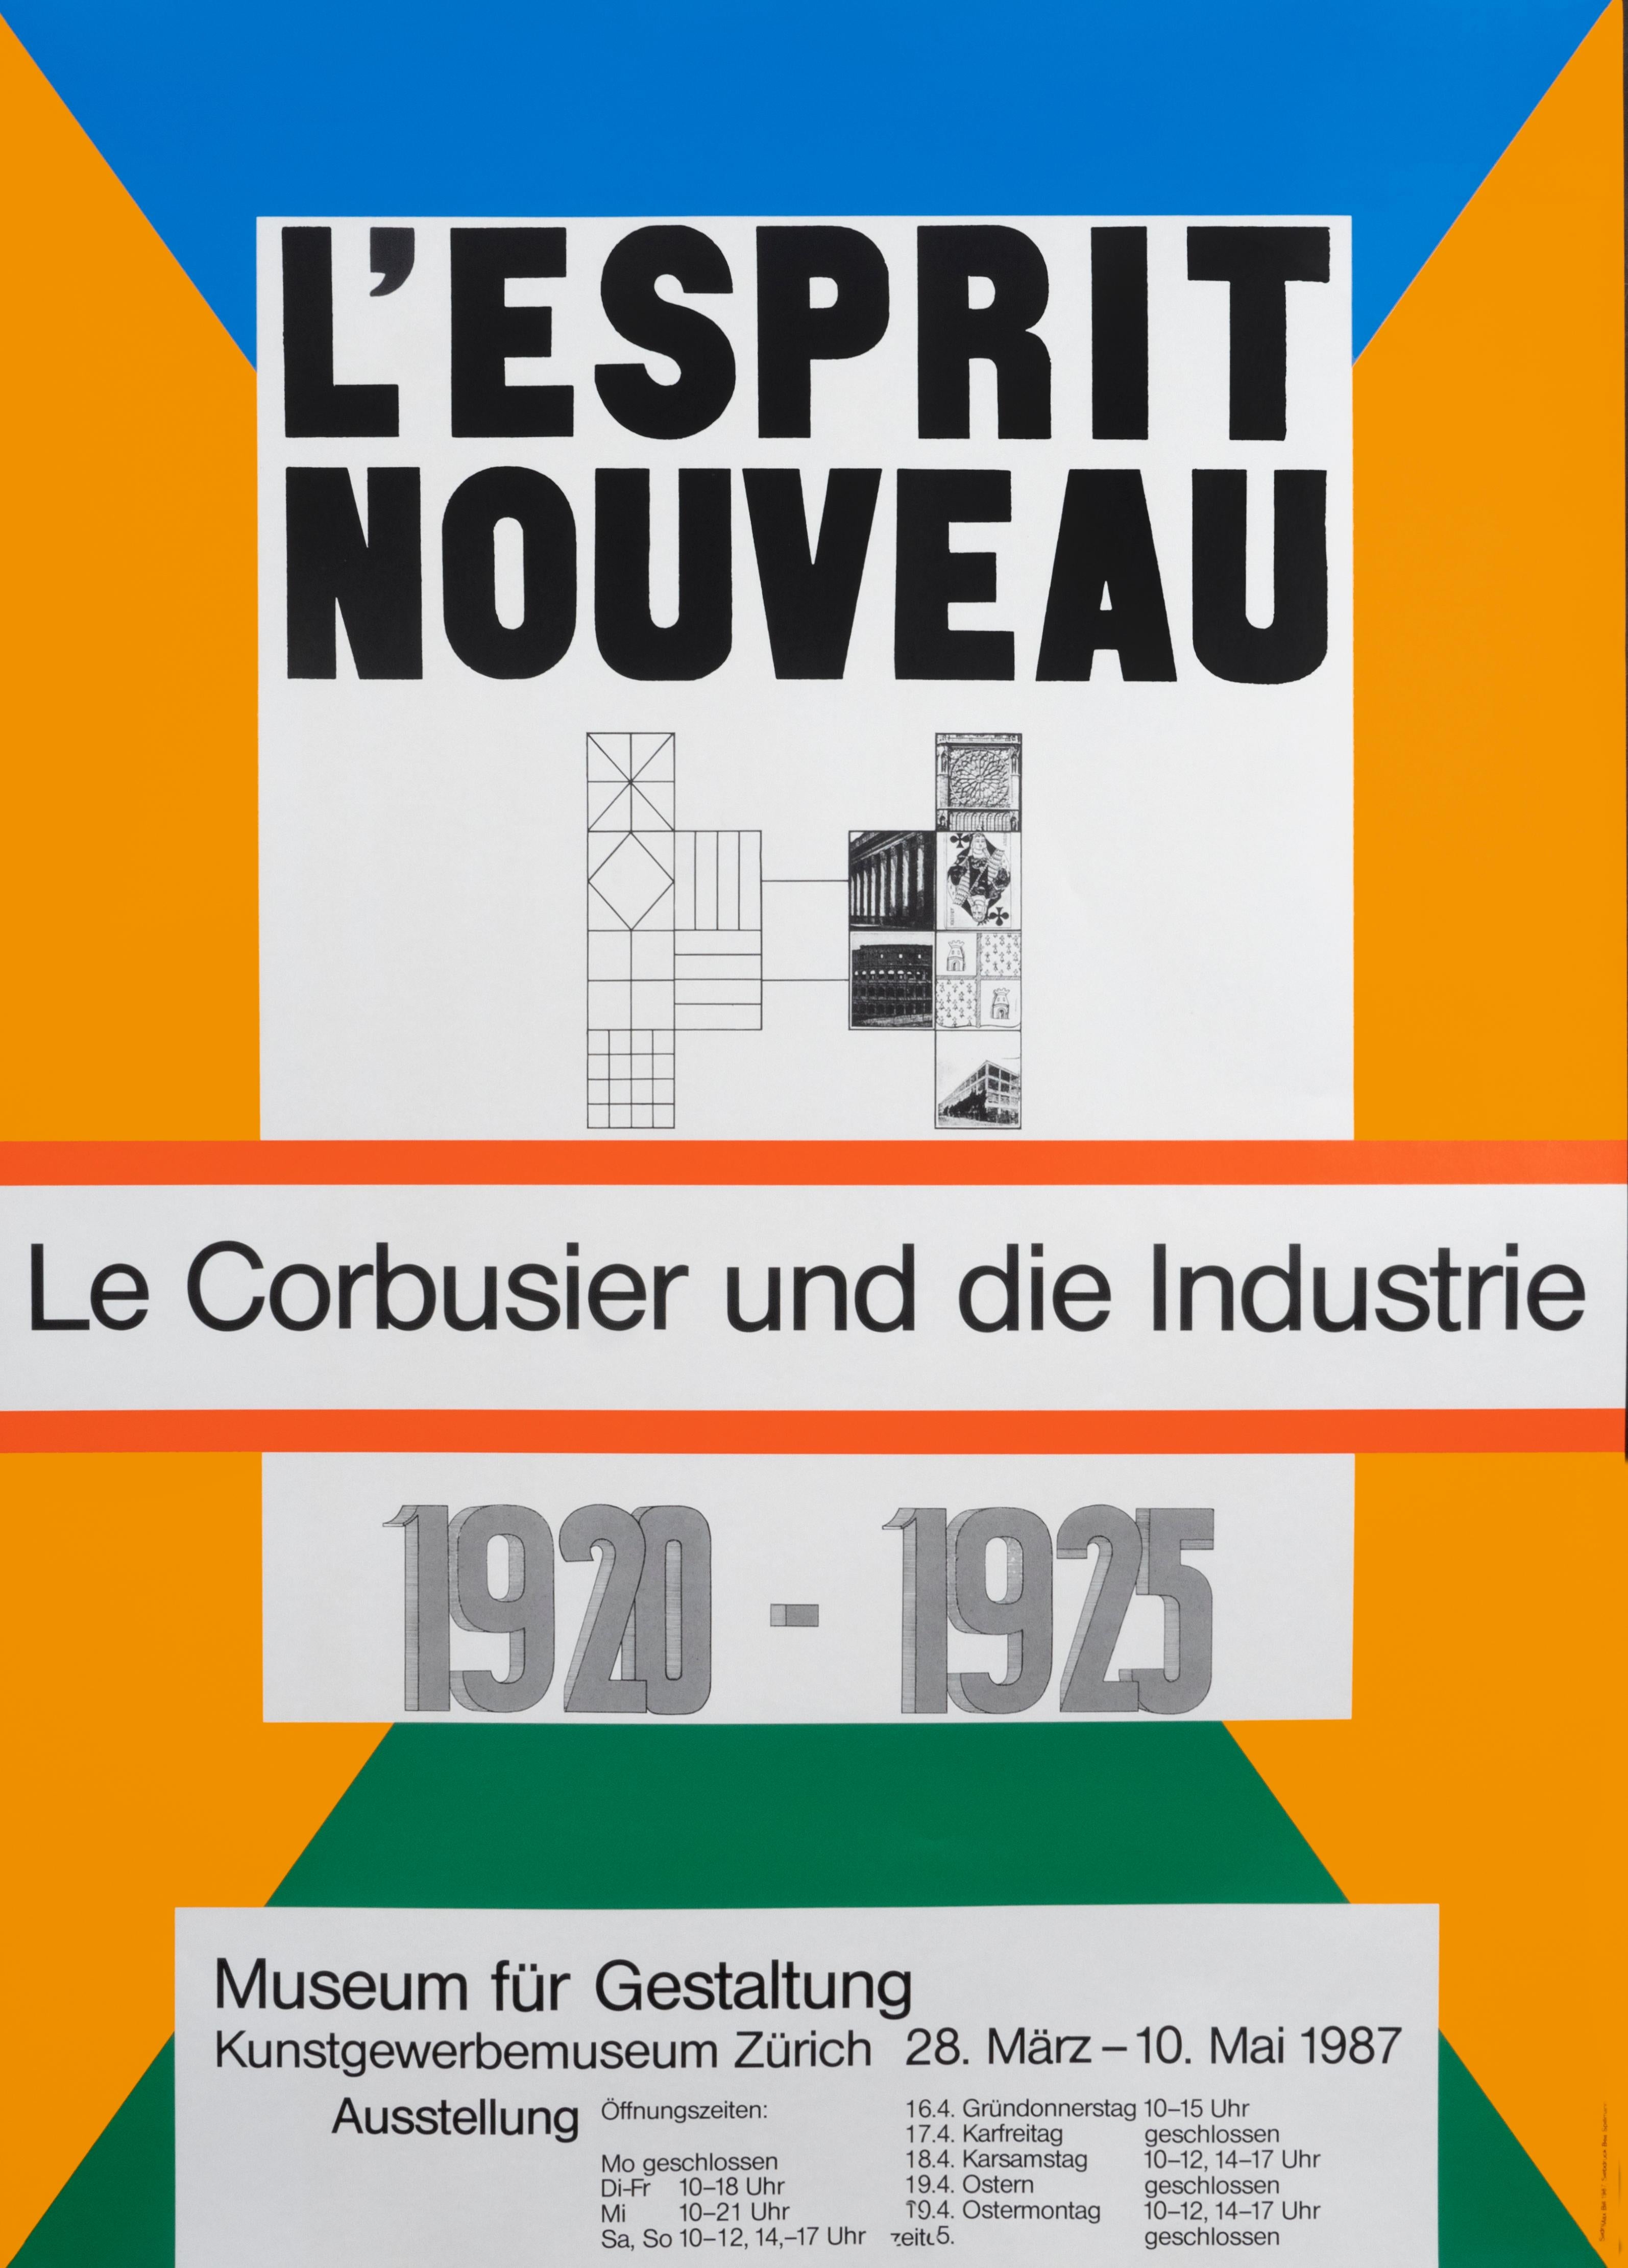 "L'Esprit Nouveau - Le Corbusier" Original Vintage Architecture Poster - Print by Max Bill